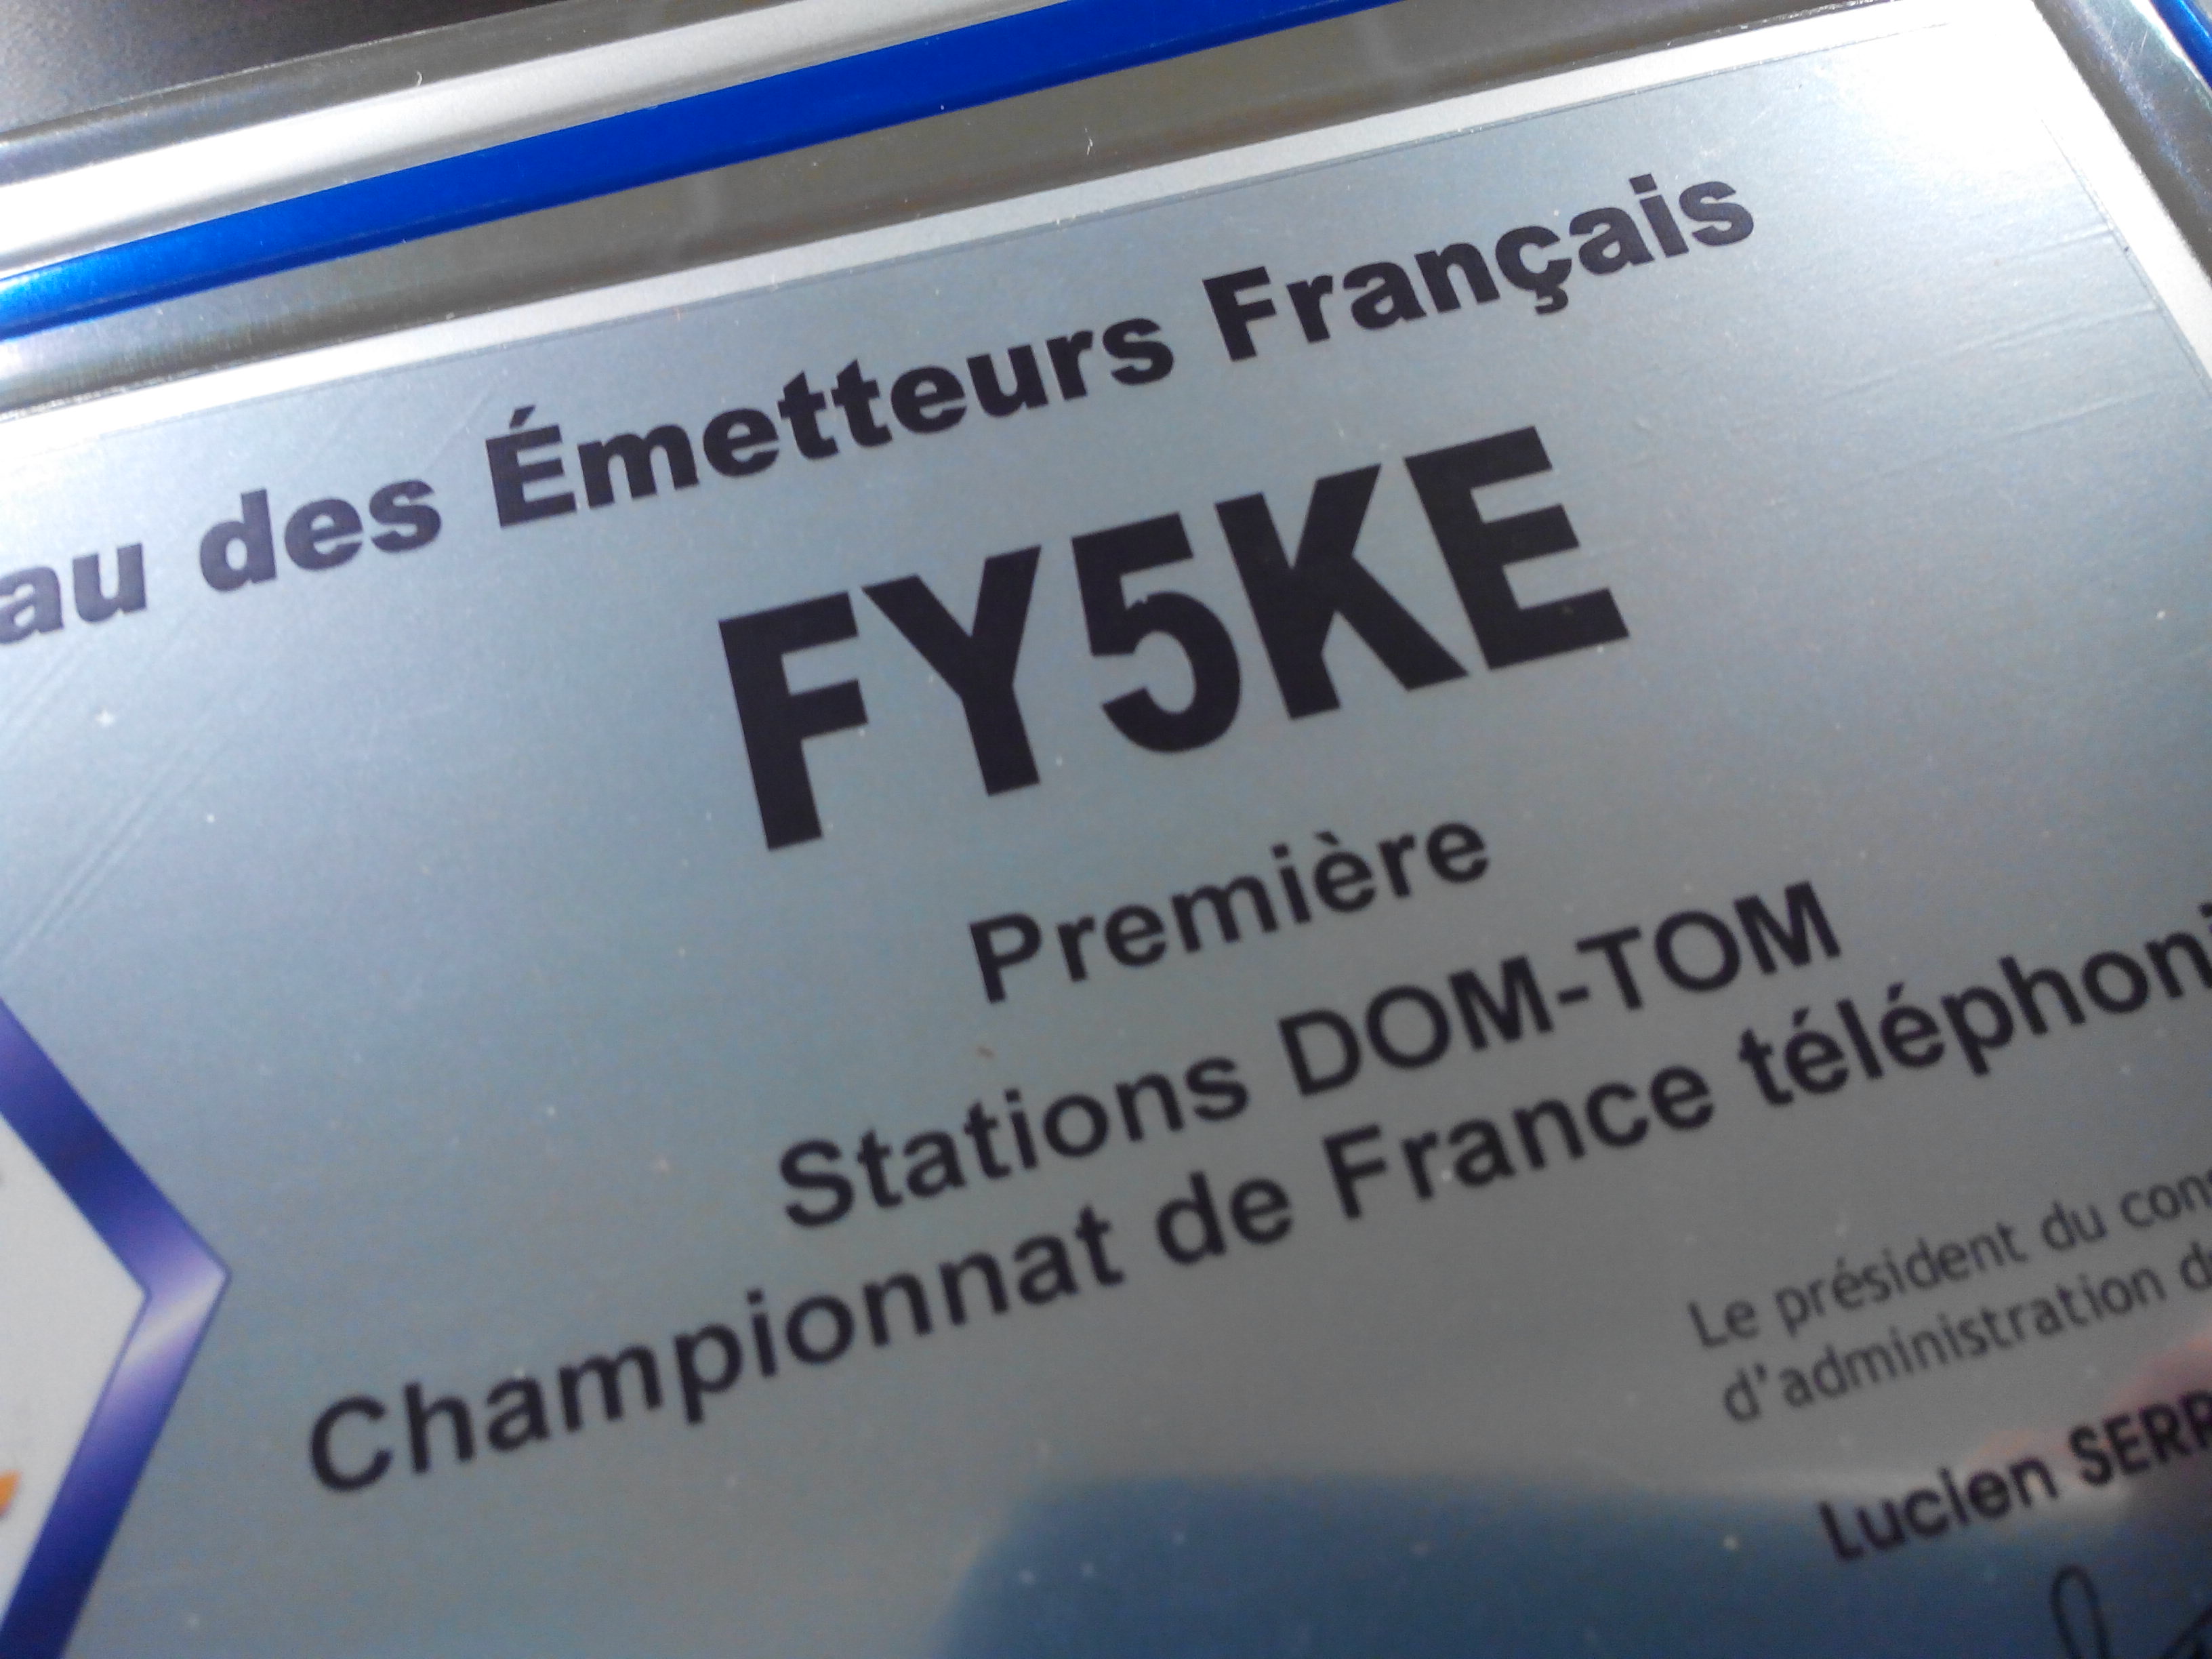 Champion de France DOM TOM FY5KE 2014